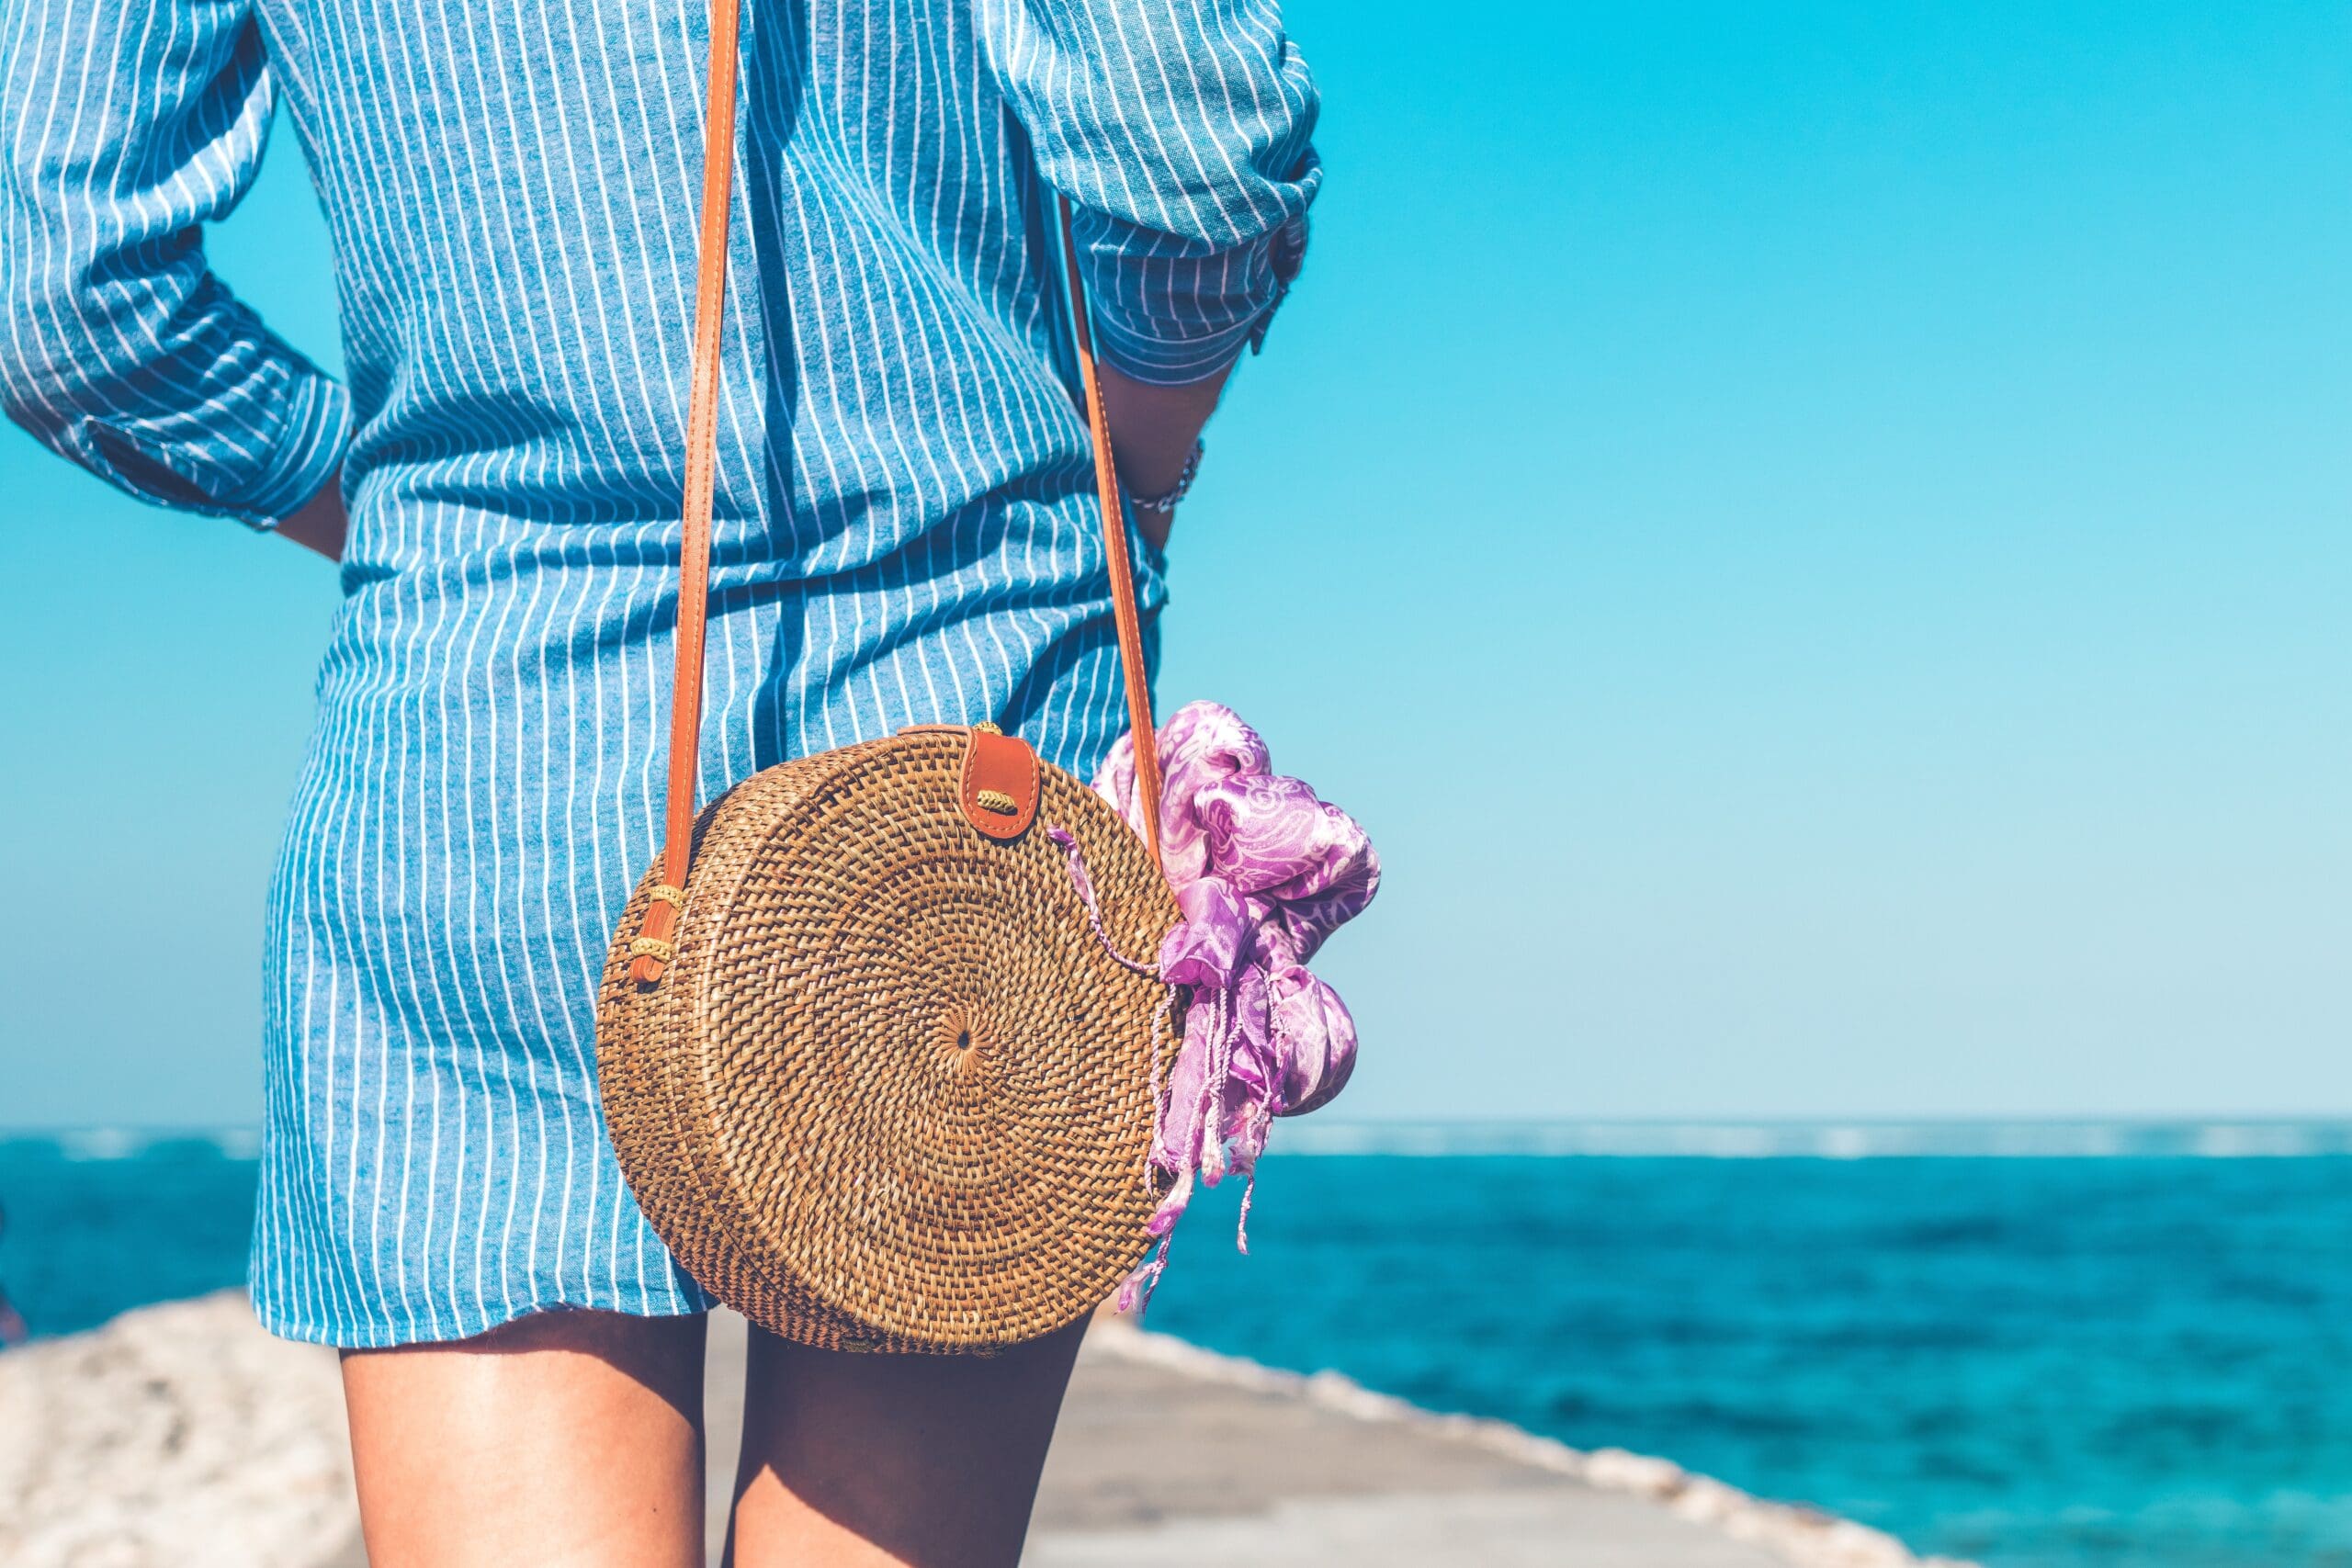 Girl on beach with handbag